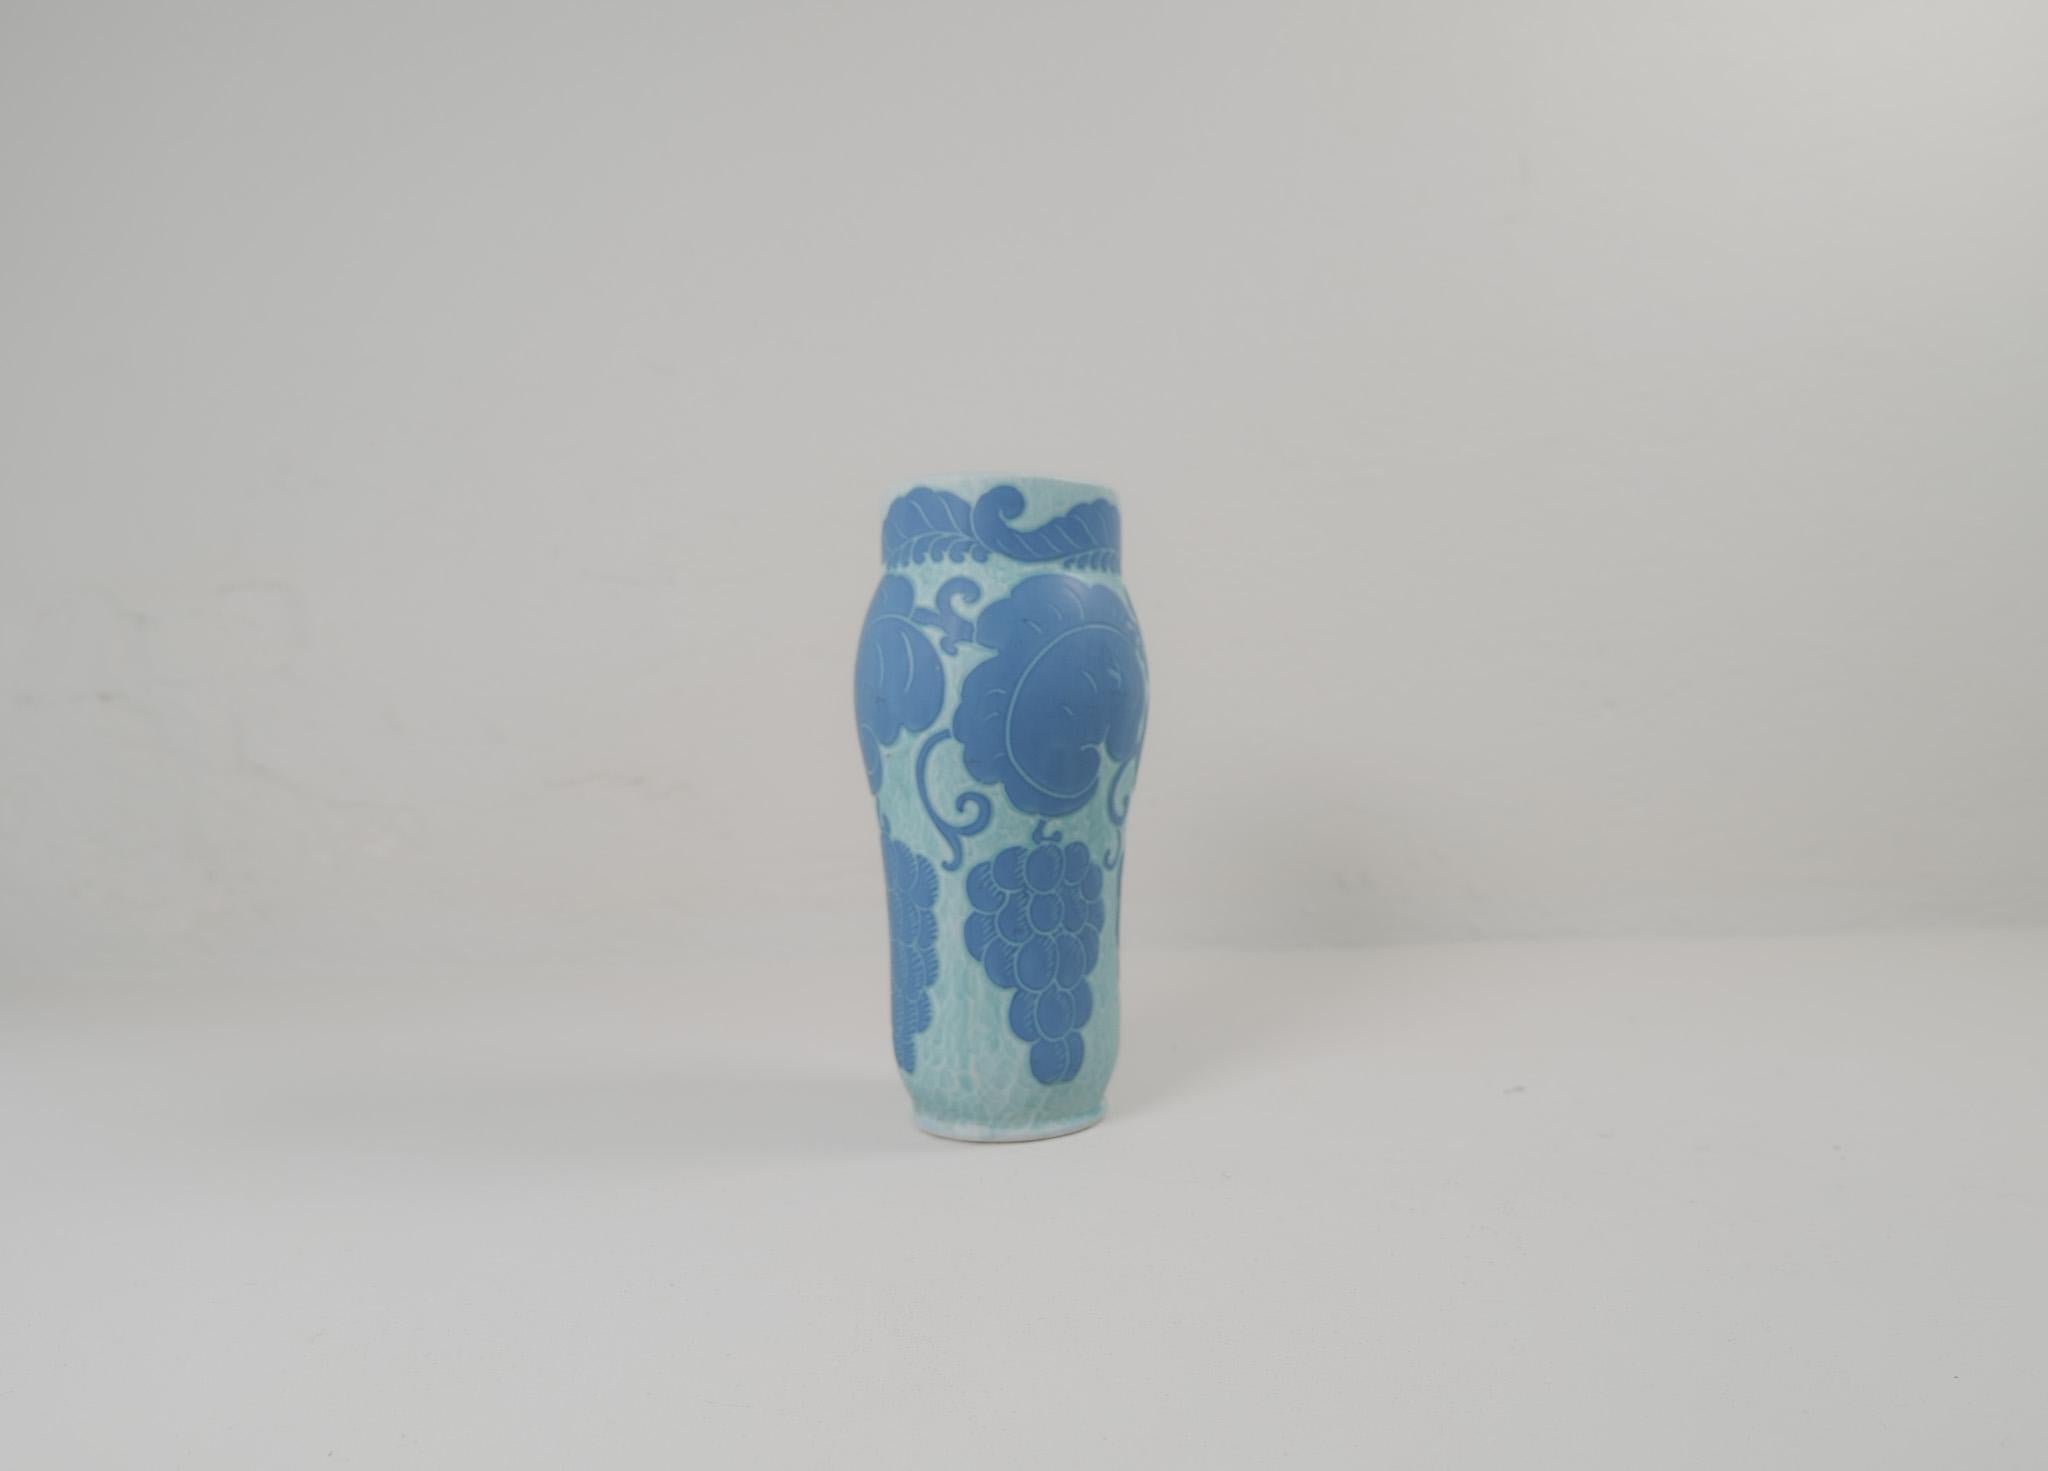 Vase en sgraffite décoré d'un motif floral/de raisin, par Josef Ekberg pour Gustavsberg.
Le sgraffito est une façon de combiner deux couches en un motif. La deuxième couche est découpée, et il reste un fond bleu clair avec un beau motif sur le